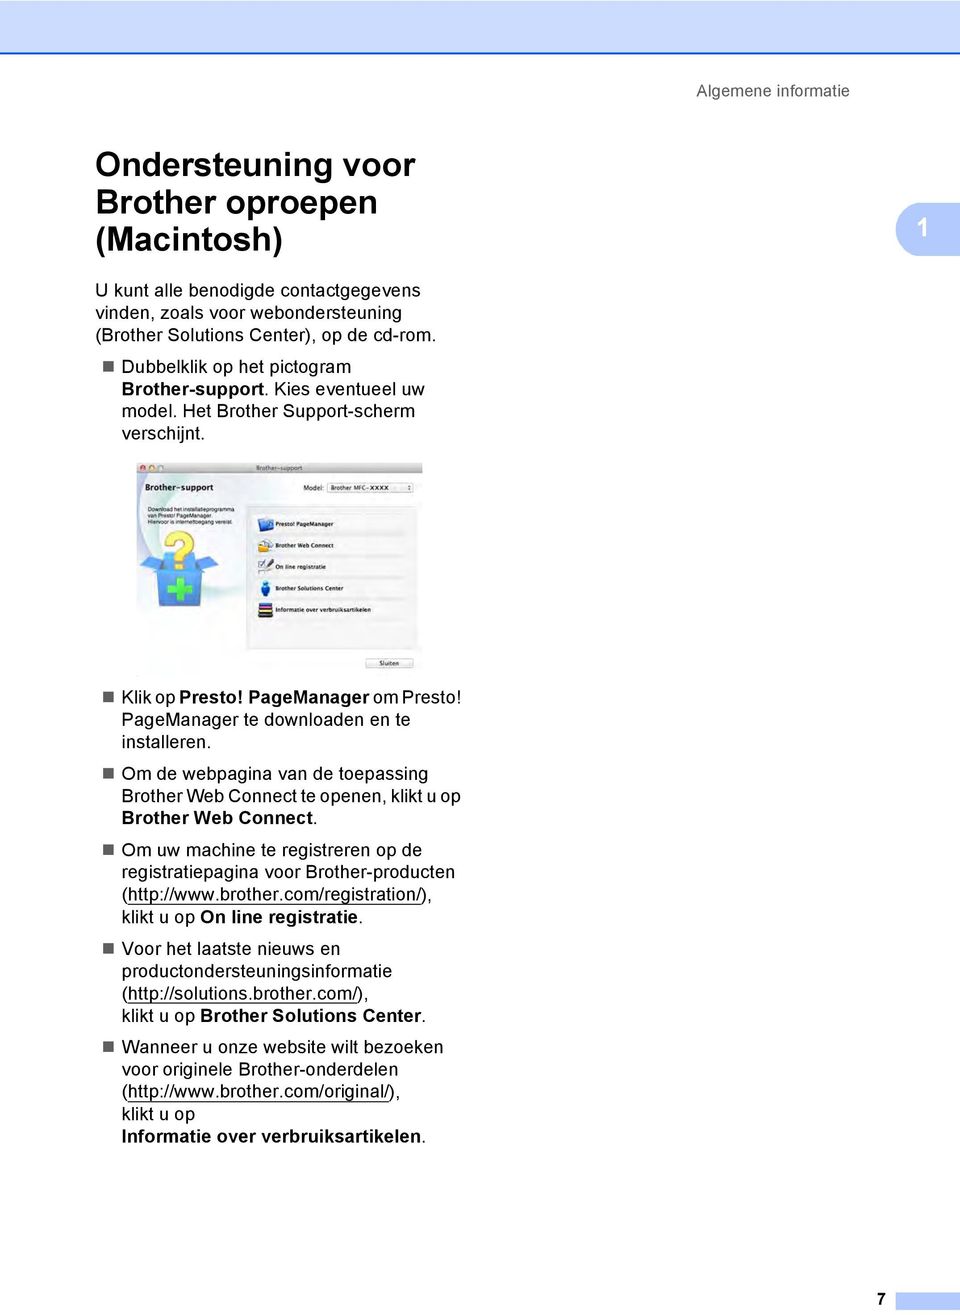 Om de webpagina van de toepassing Brother Web Connect te openen, klikt u op Brother Web Connect. Om uw machine te registreren op de registratiepagina voor Brother-producten (http://www.brother.